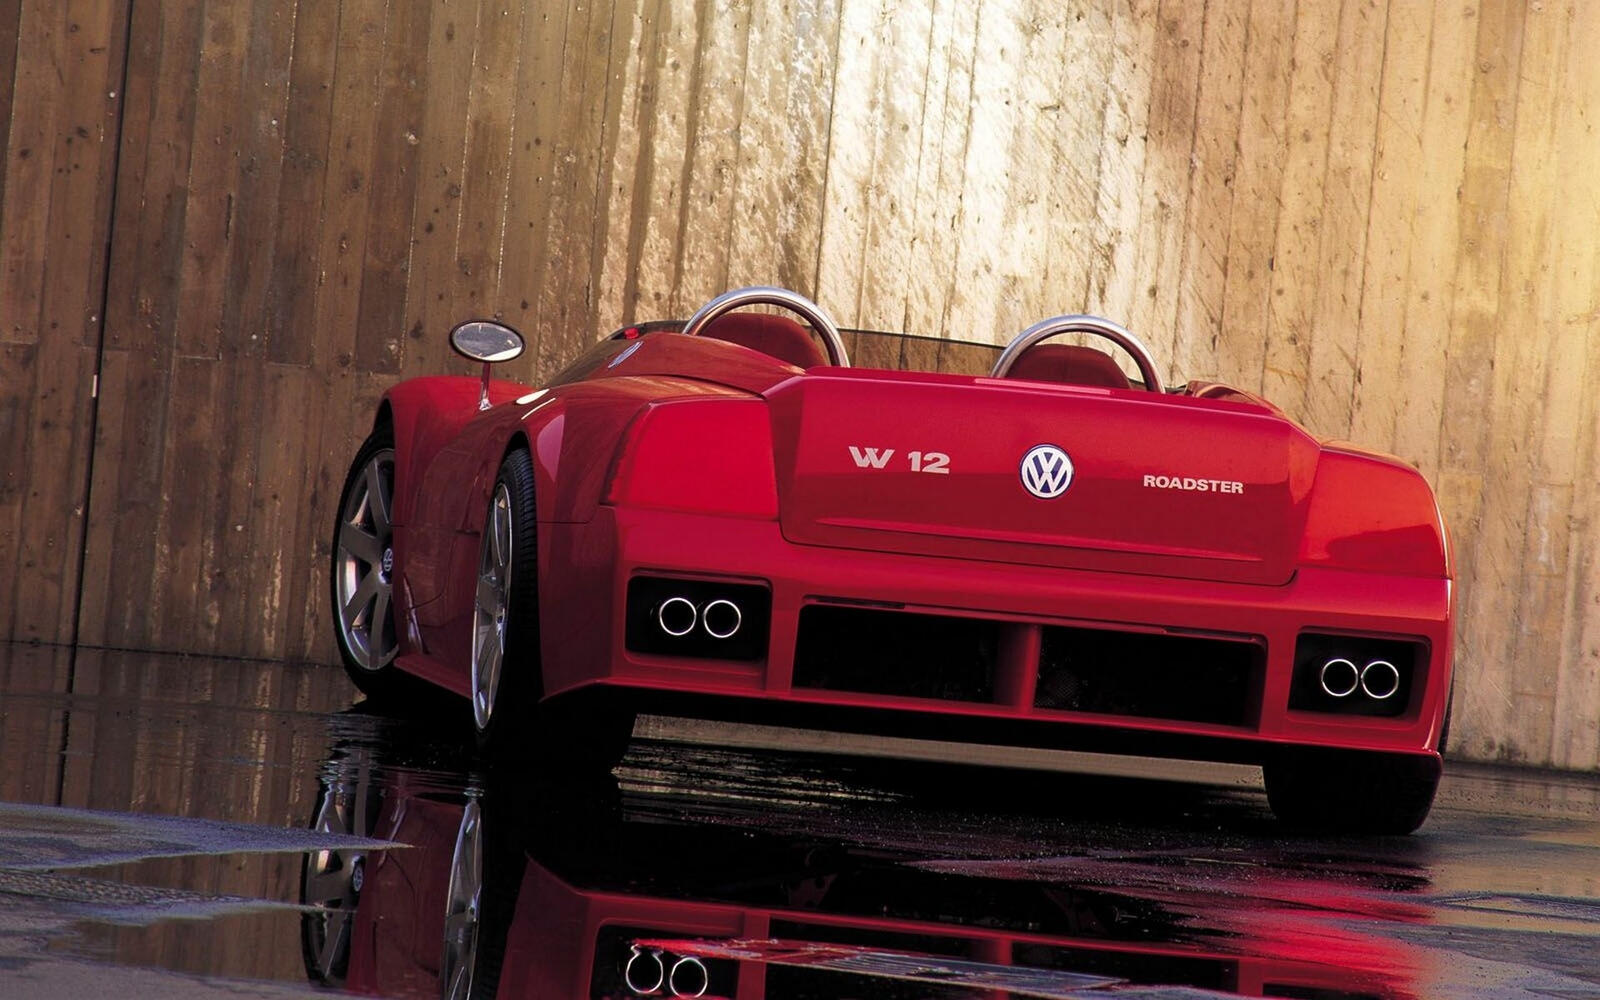 Wallpapers Volkswagen roadster red on the desktop